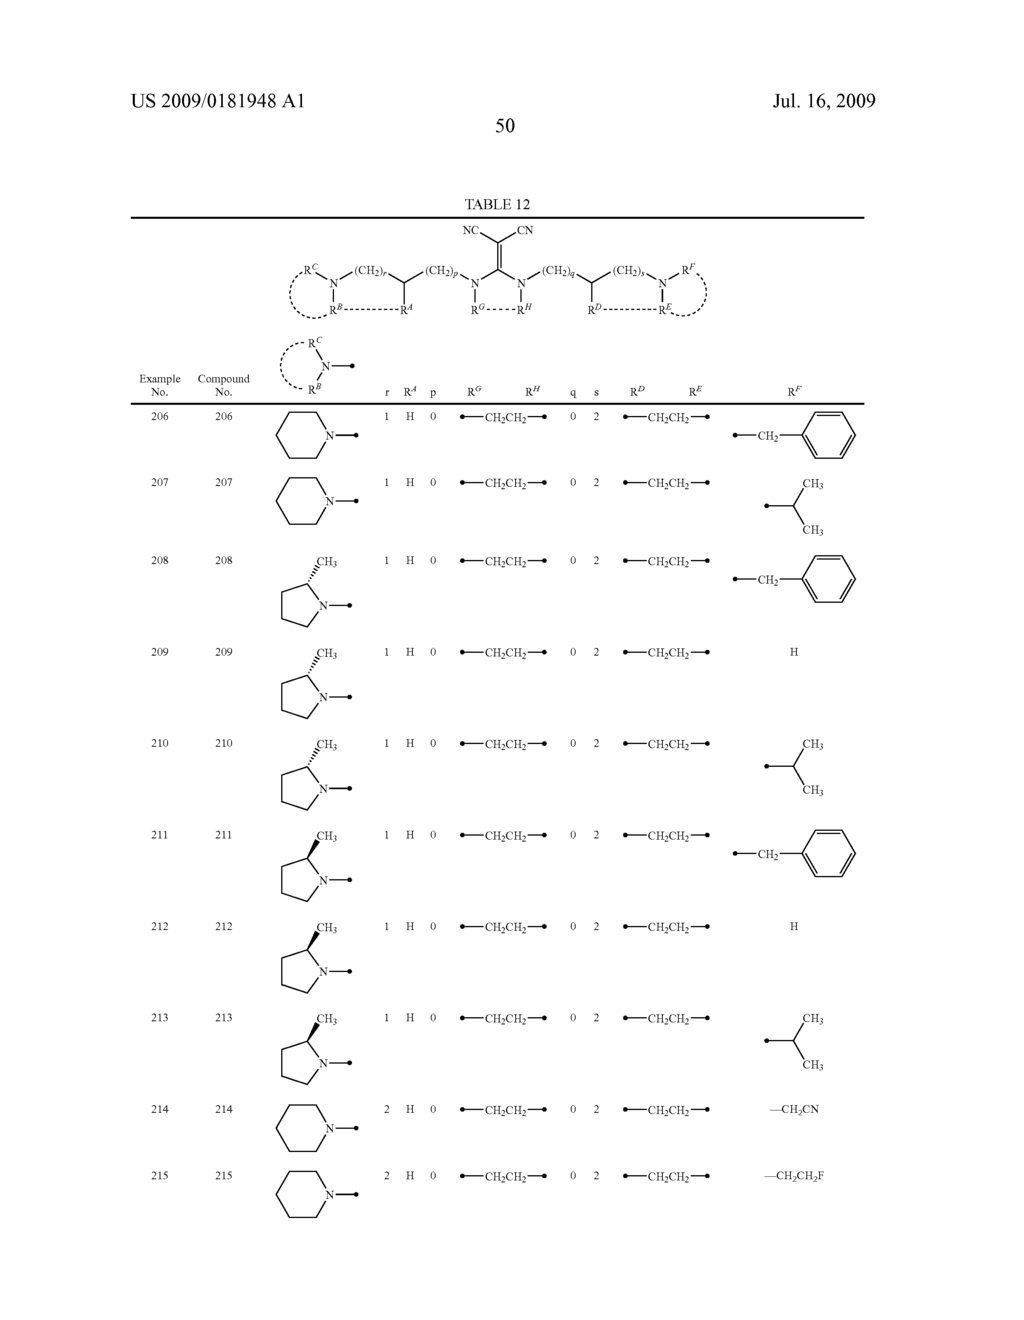 DIAMINE DERIVATIVE - diagram, schematic, and image 51